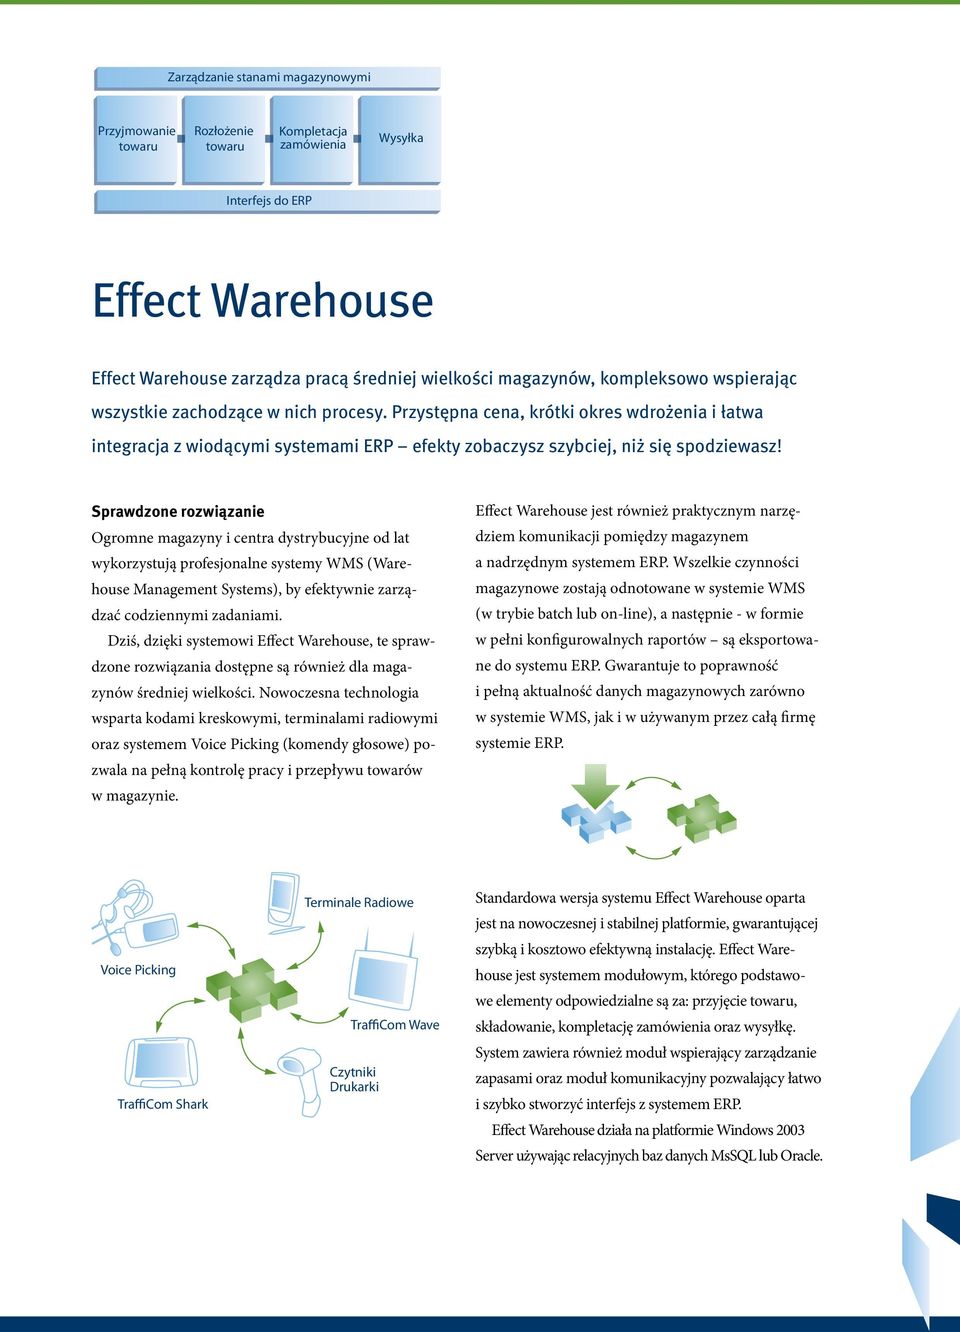 Sprawdzone rozwiązanie Ogromne magazyny i centra dystrybucyjne od lat wykorzystują profesjonalne systemy WMS (Warehouse Management Systems), by efektywnie zarządzać codziennymi zadaniami.